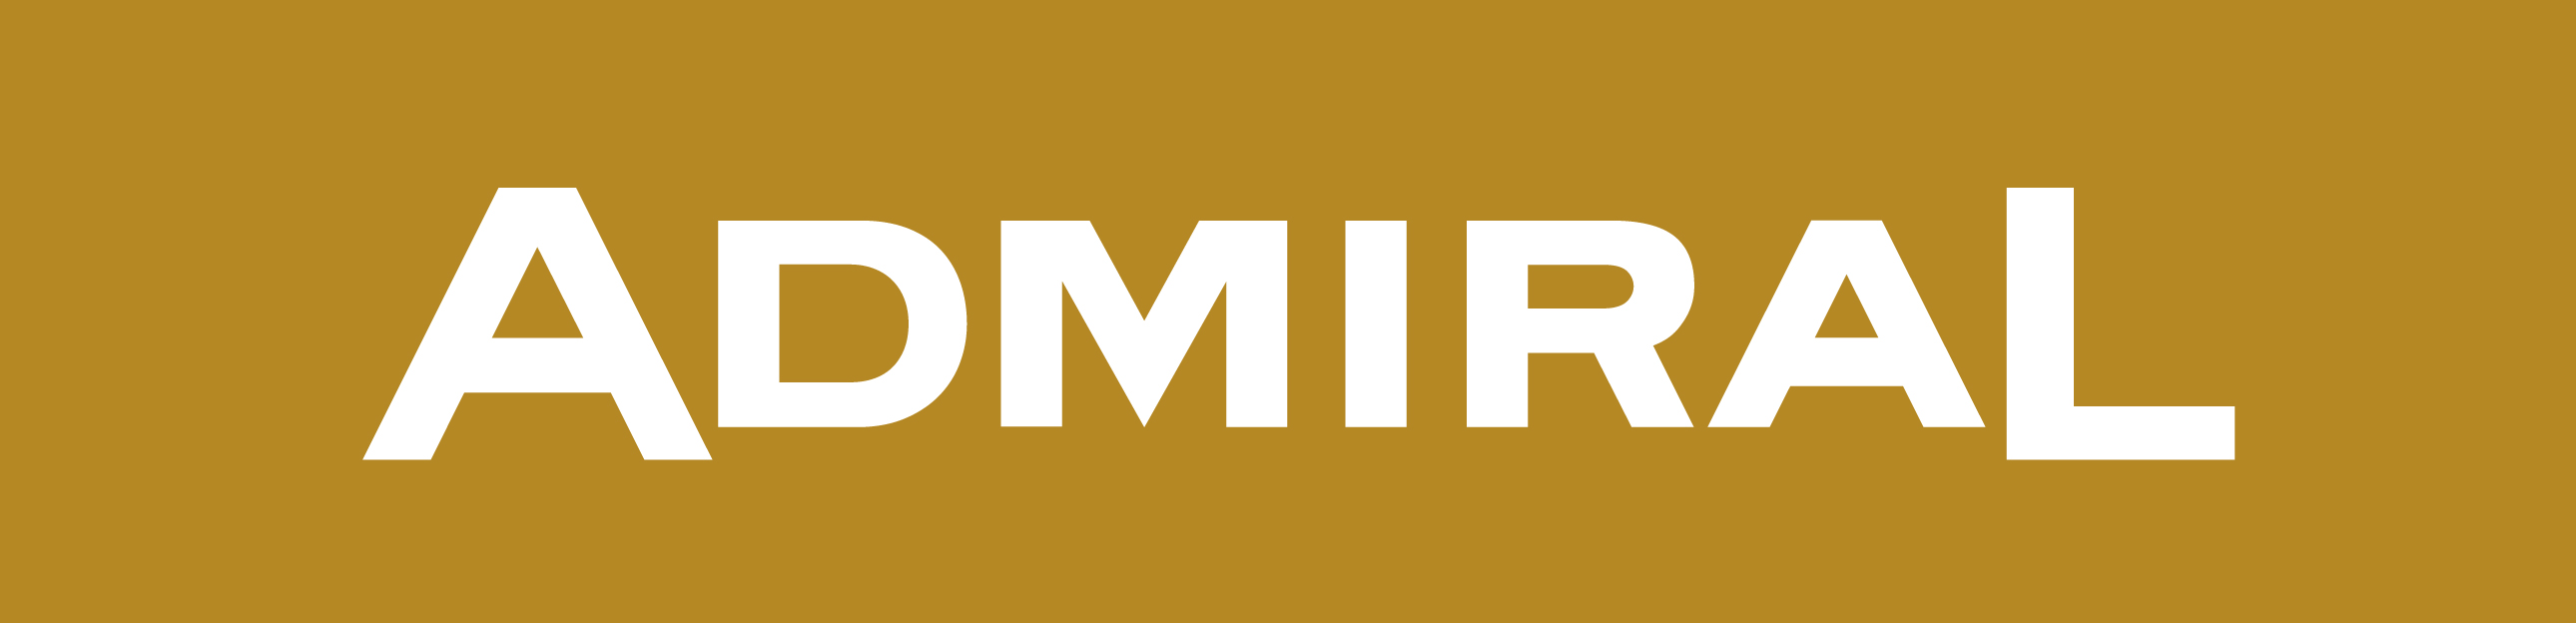 Logo Admiral zlat3